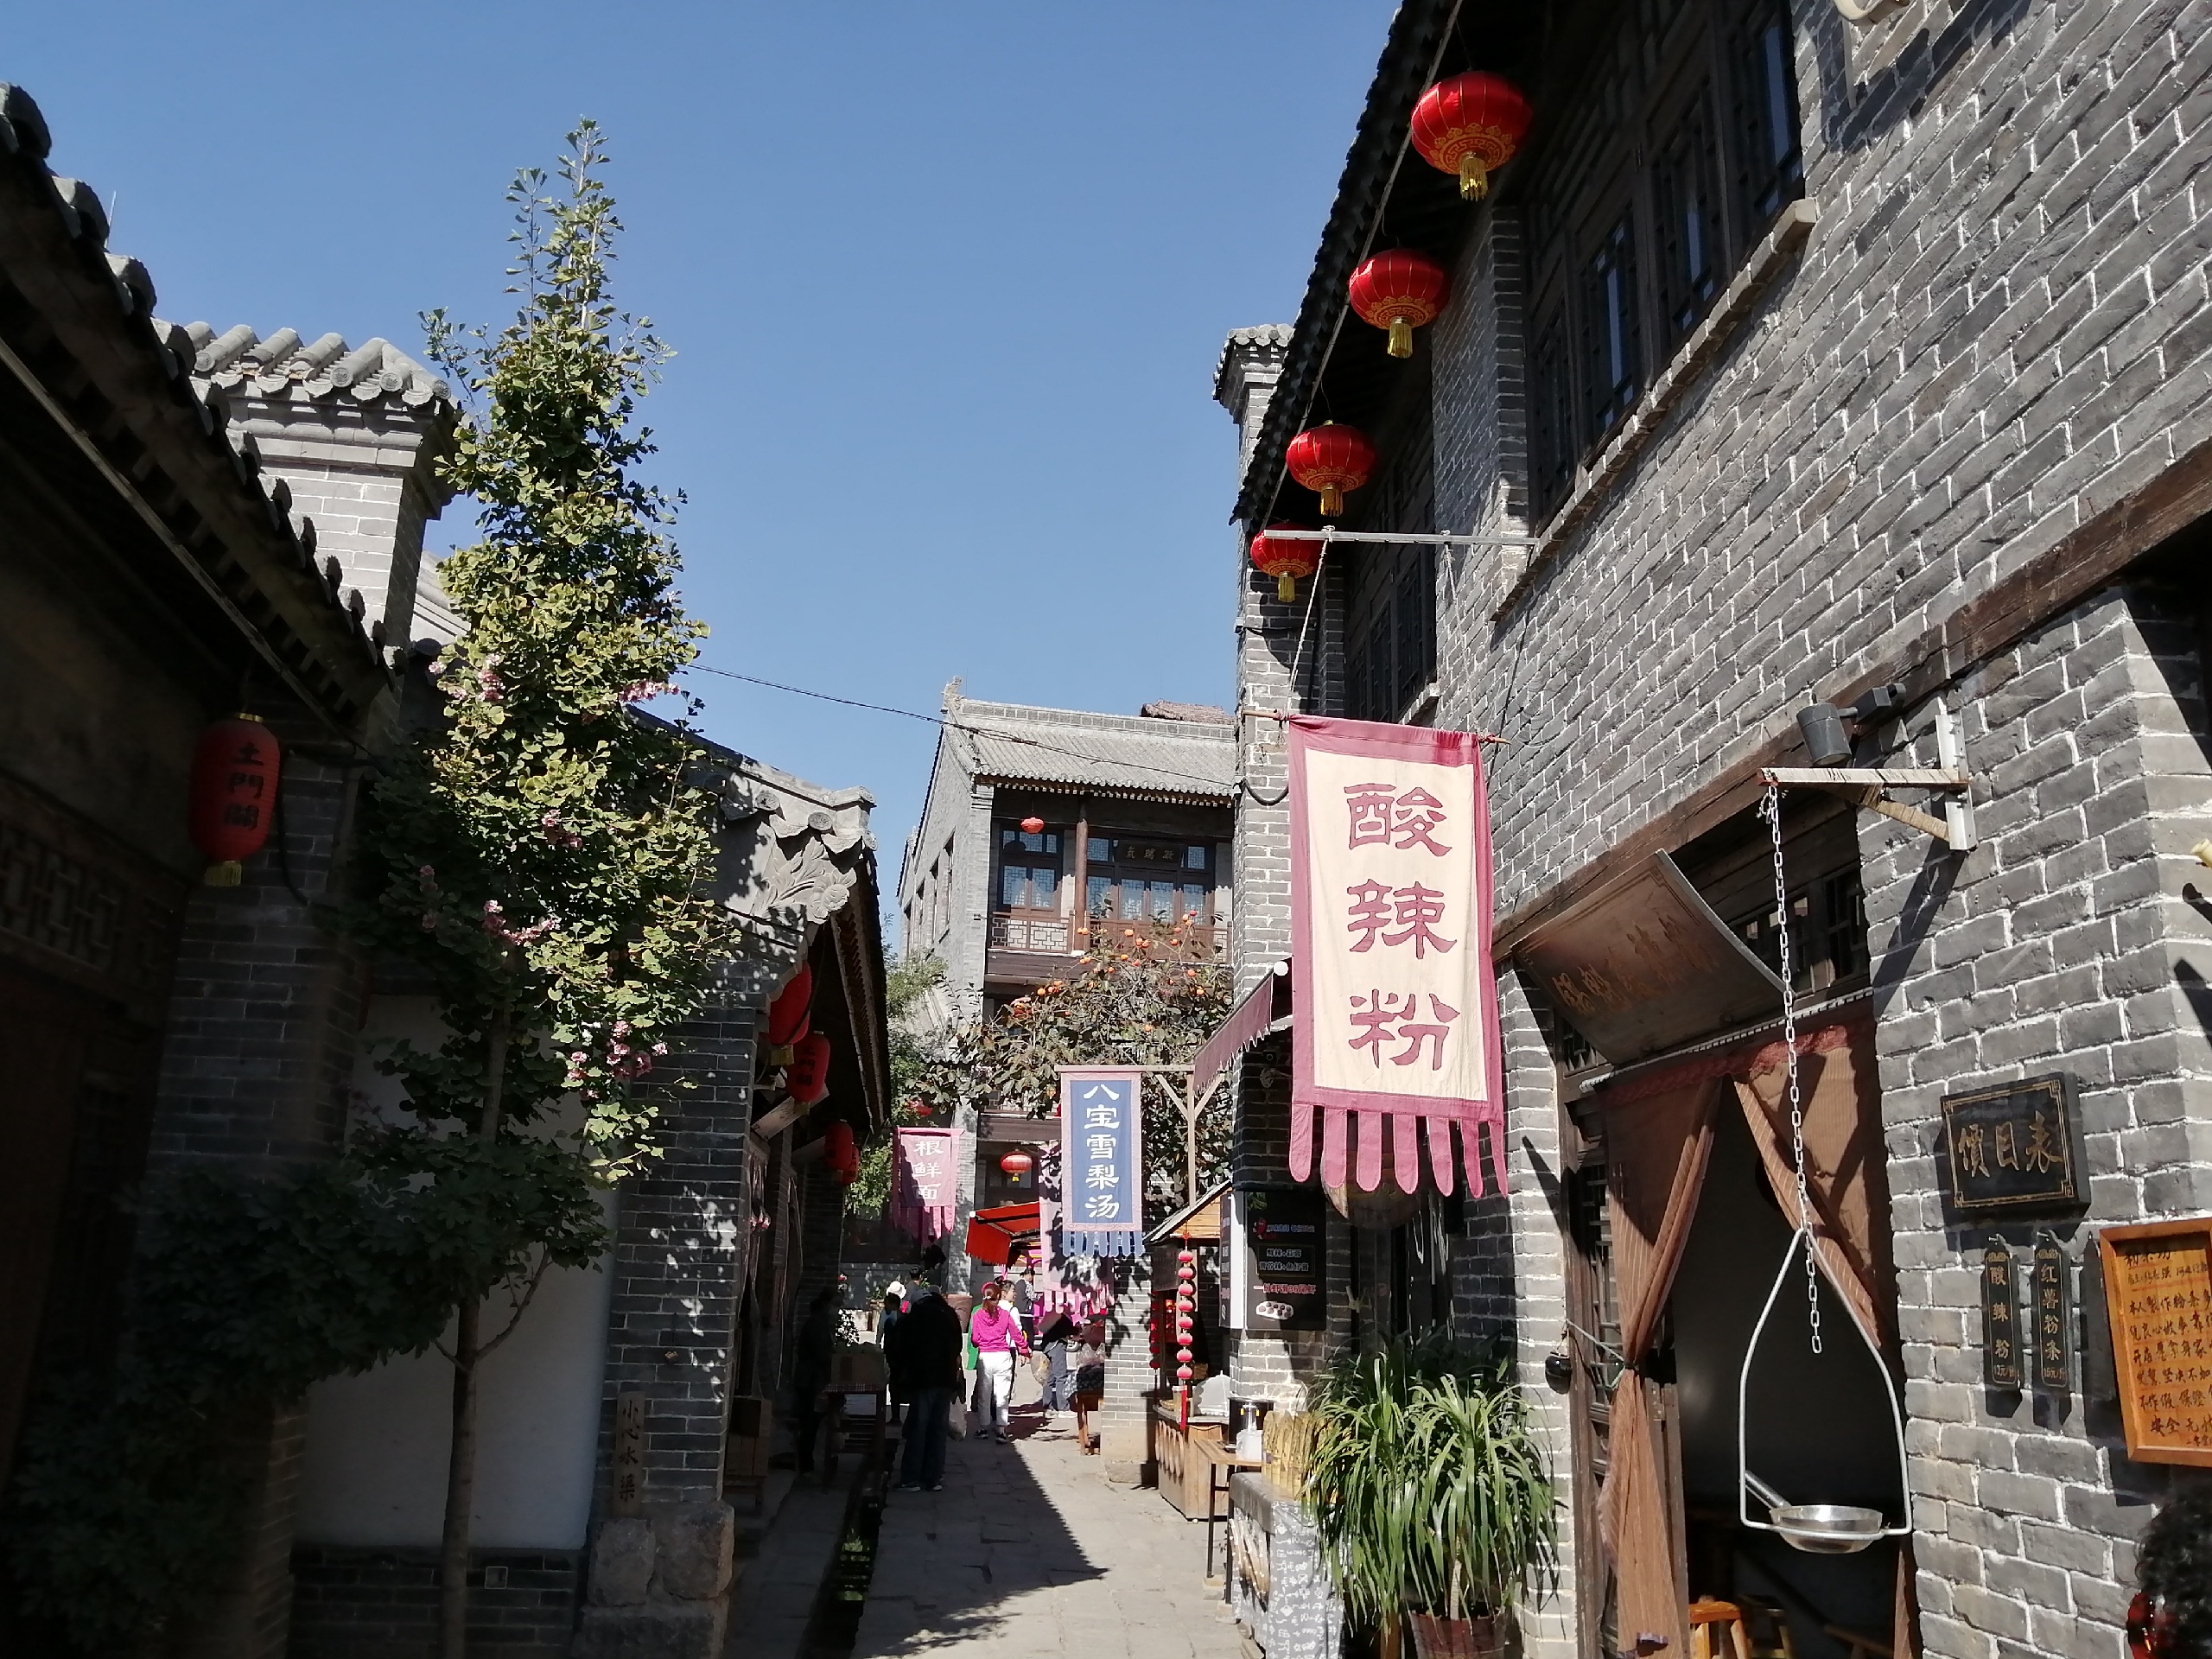 土门关驿道小镇为“太行八陉”之第五陉的井陉东口，是连接晋冀的咽喉要道